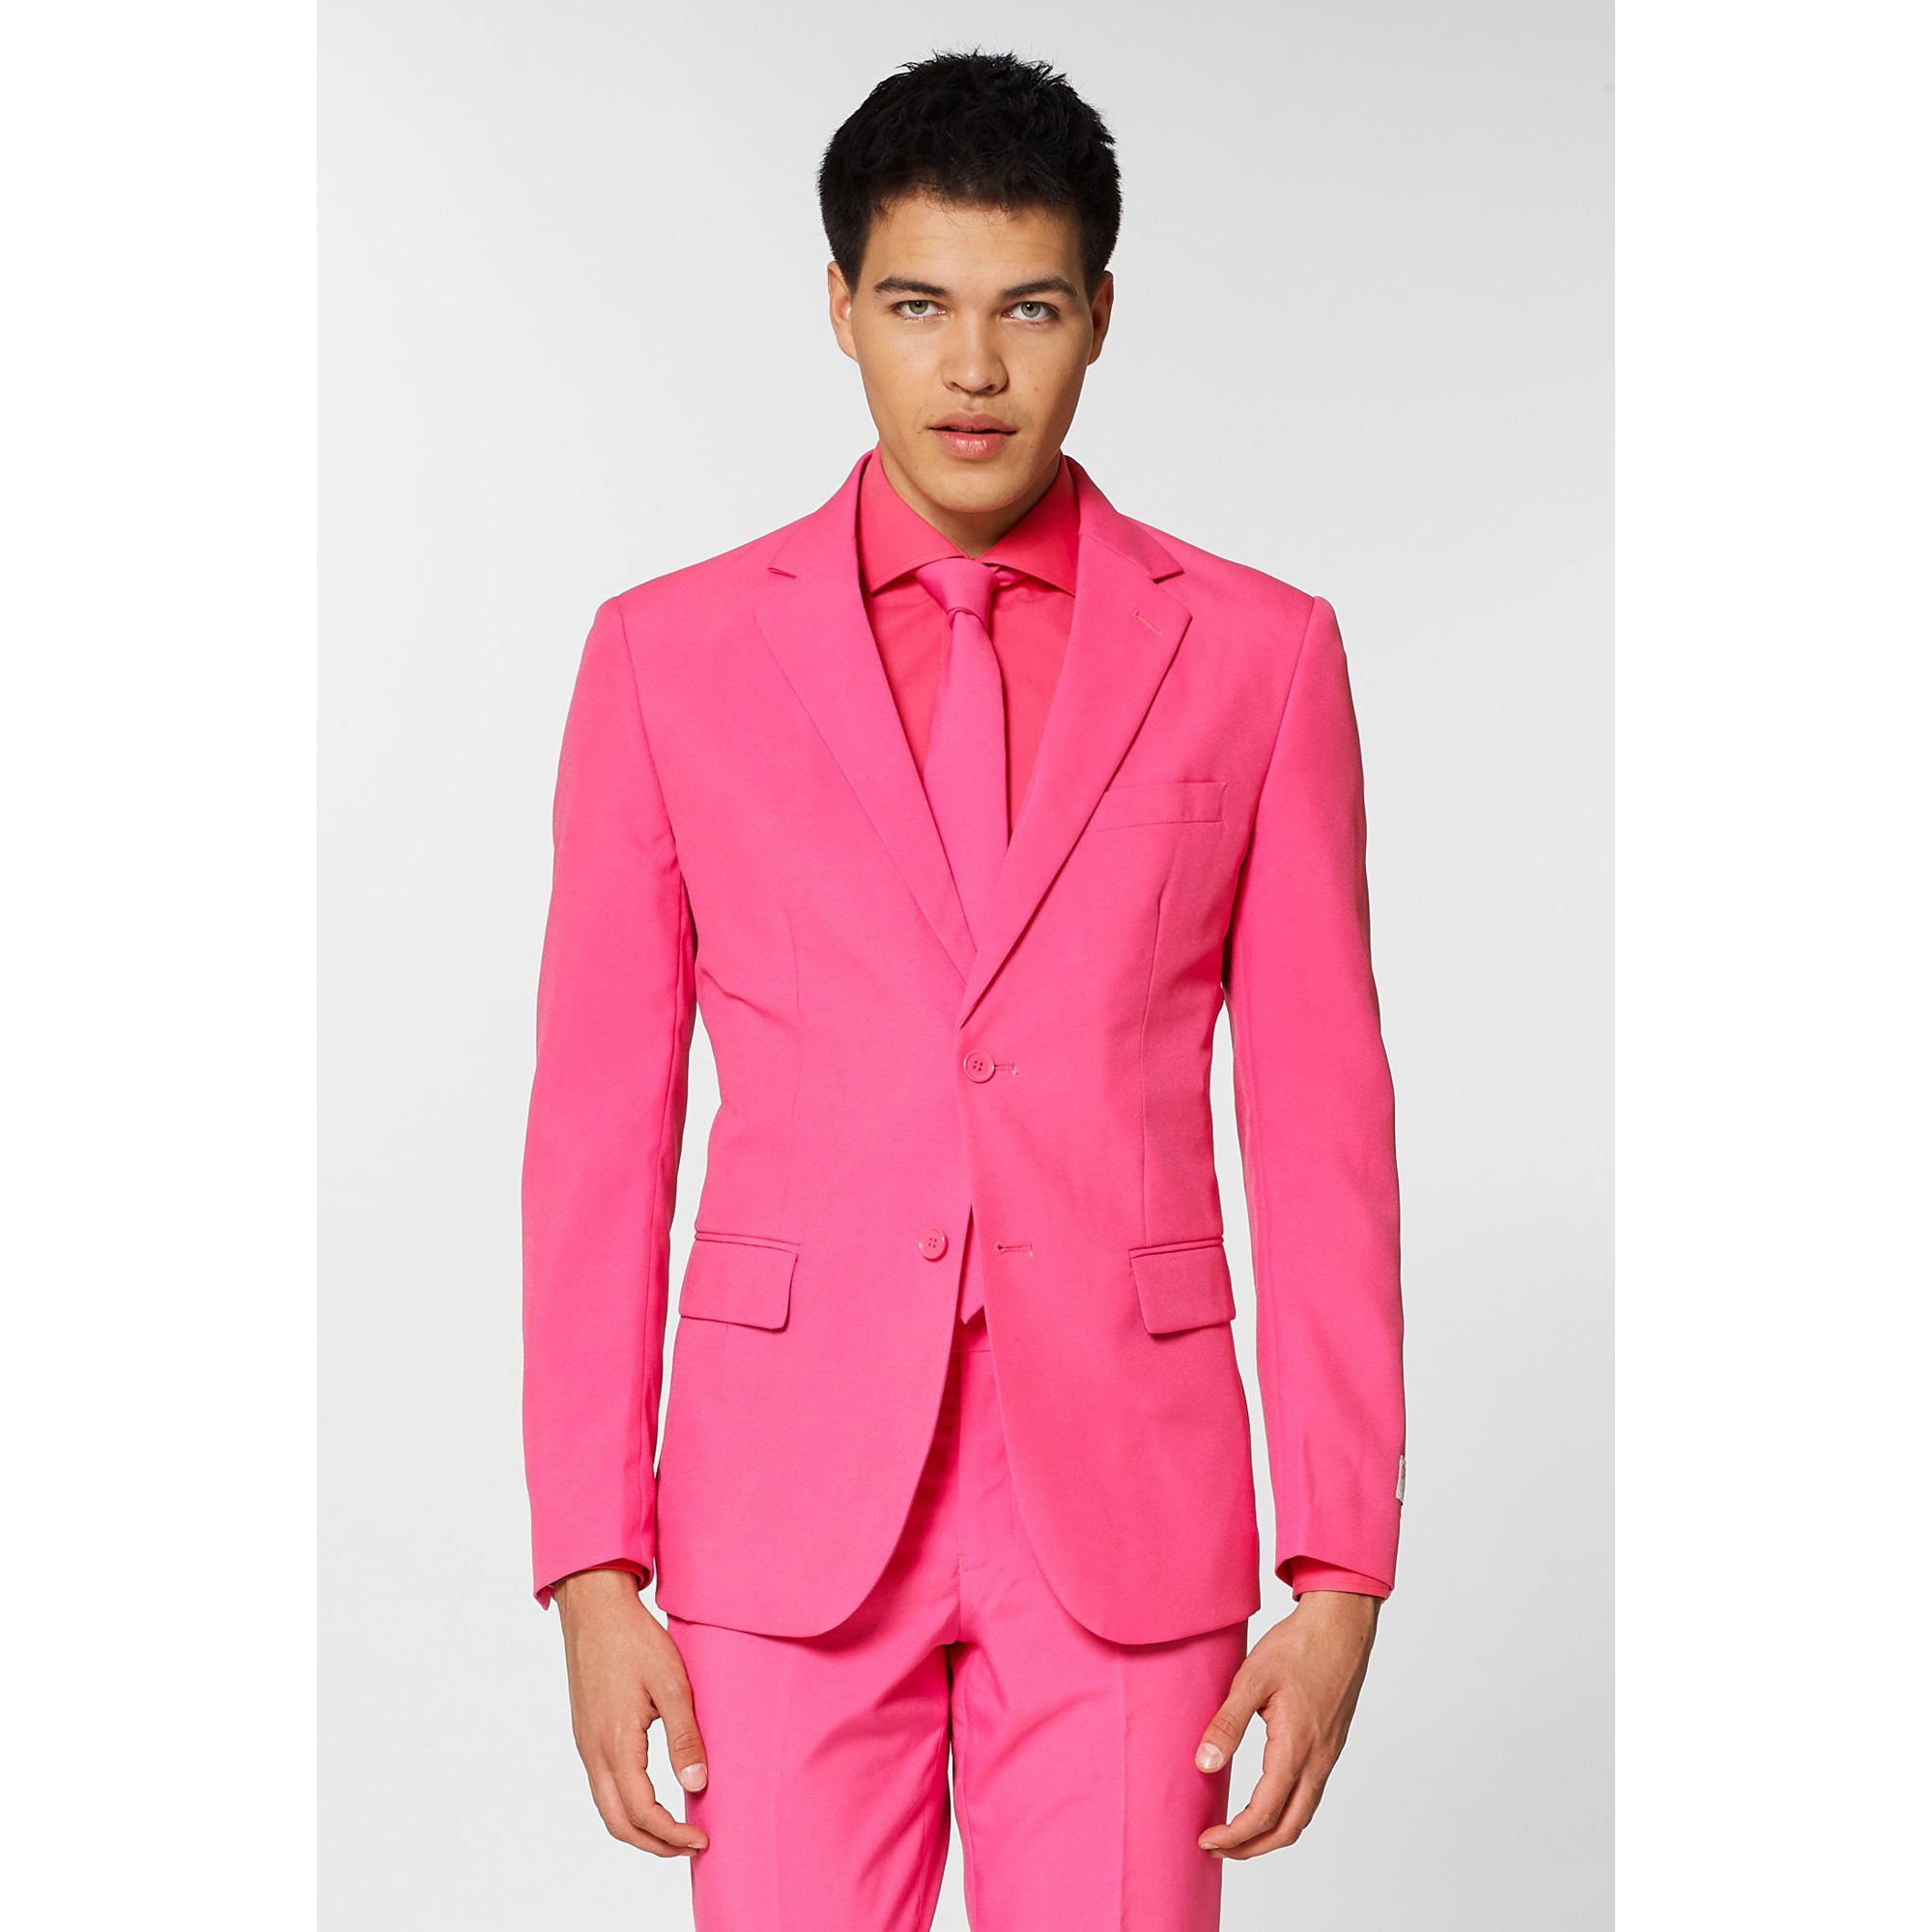 OppoSuits - Bubblegum Pink Traditional Men Adult Slim Fit Suit - XL ...